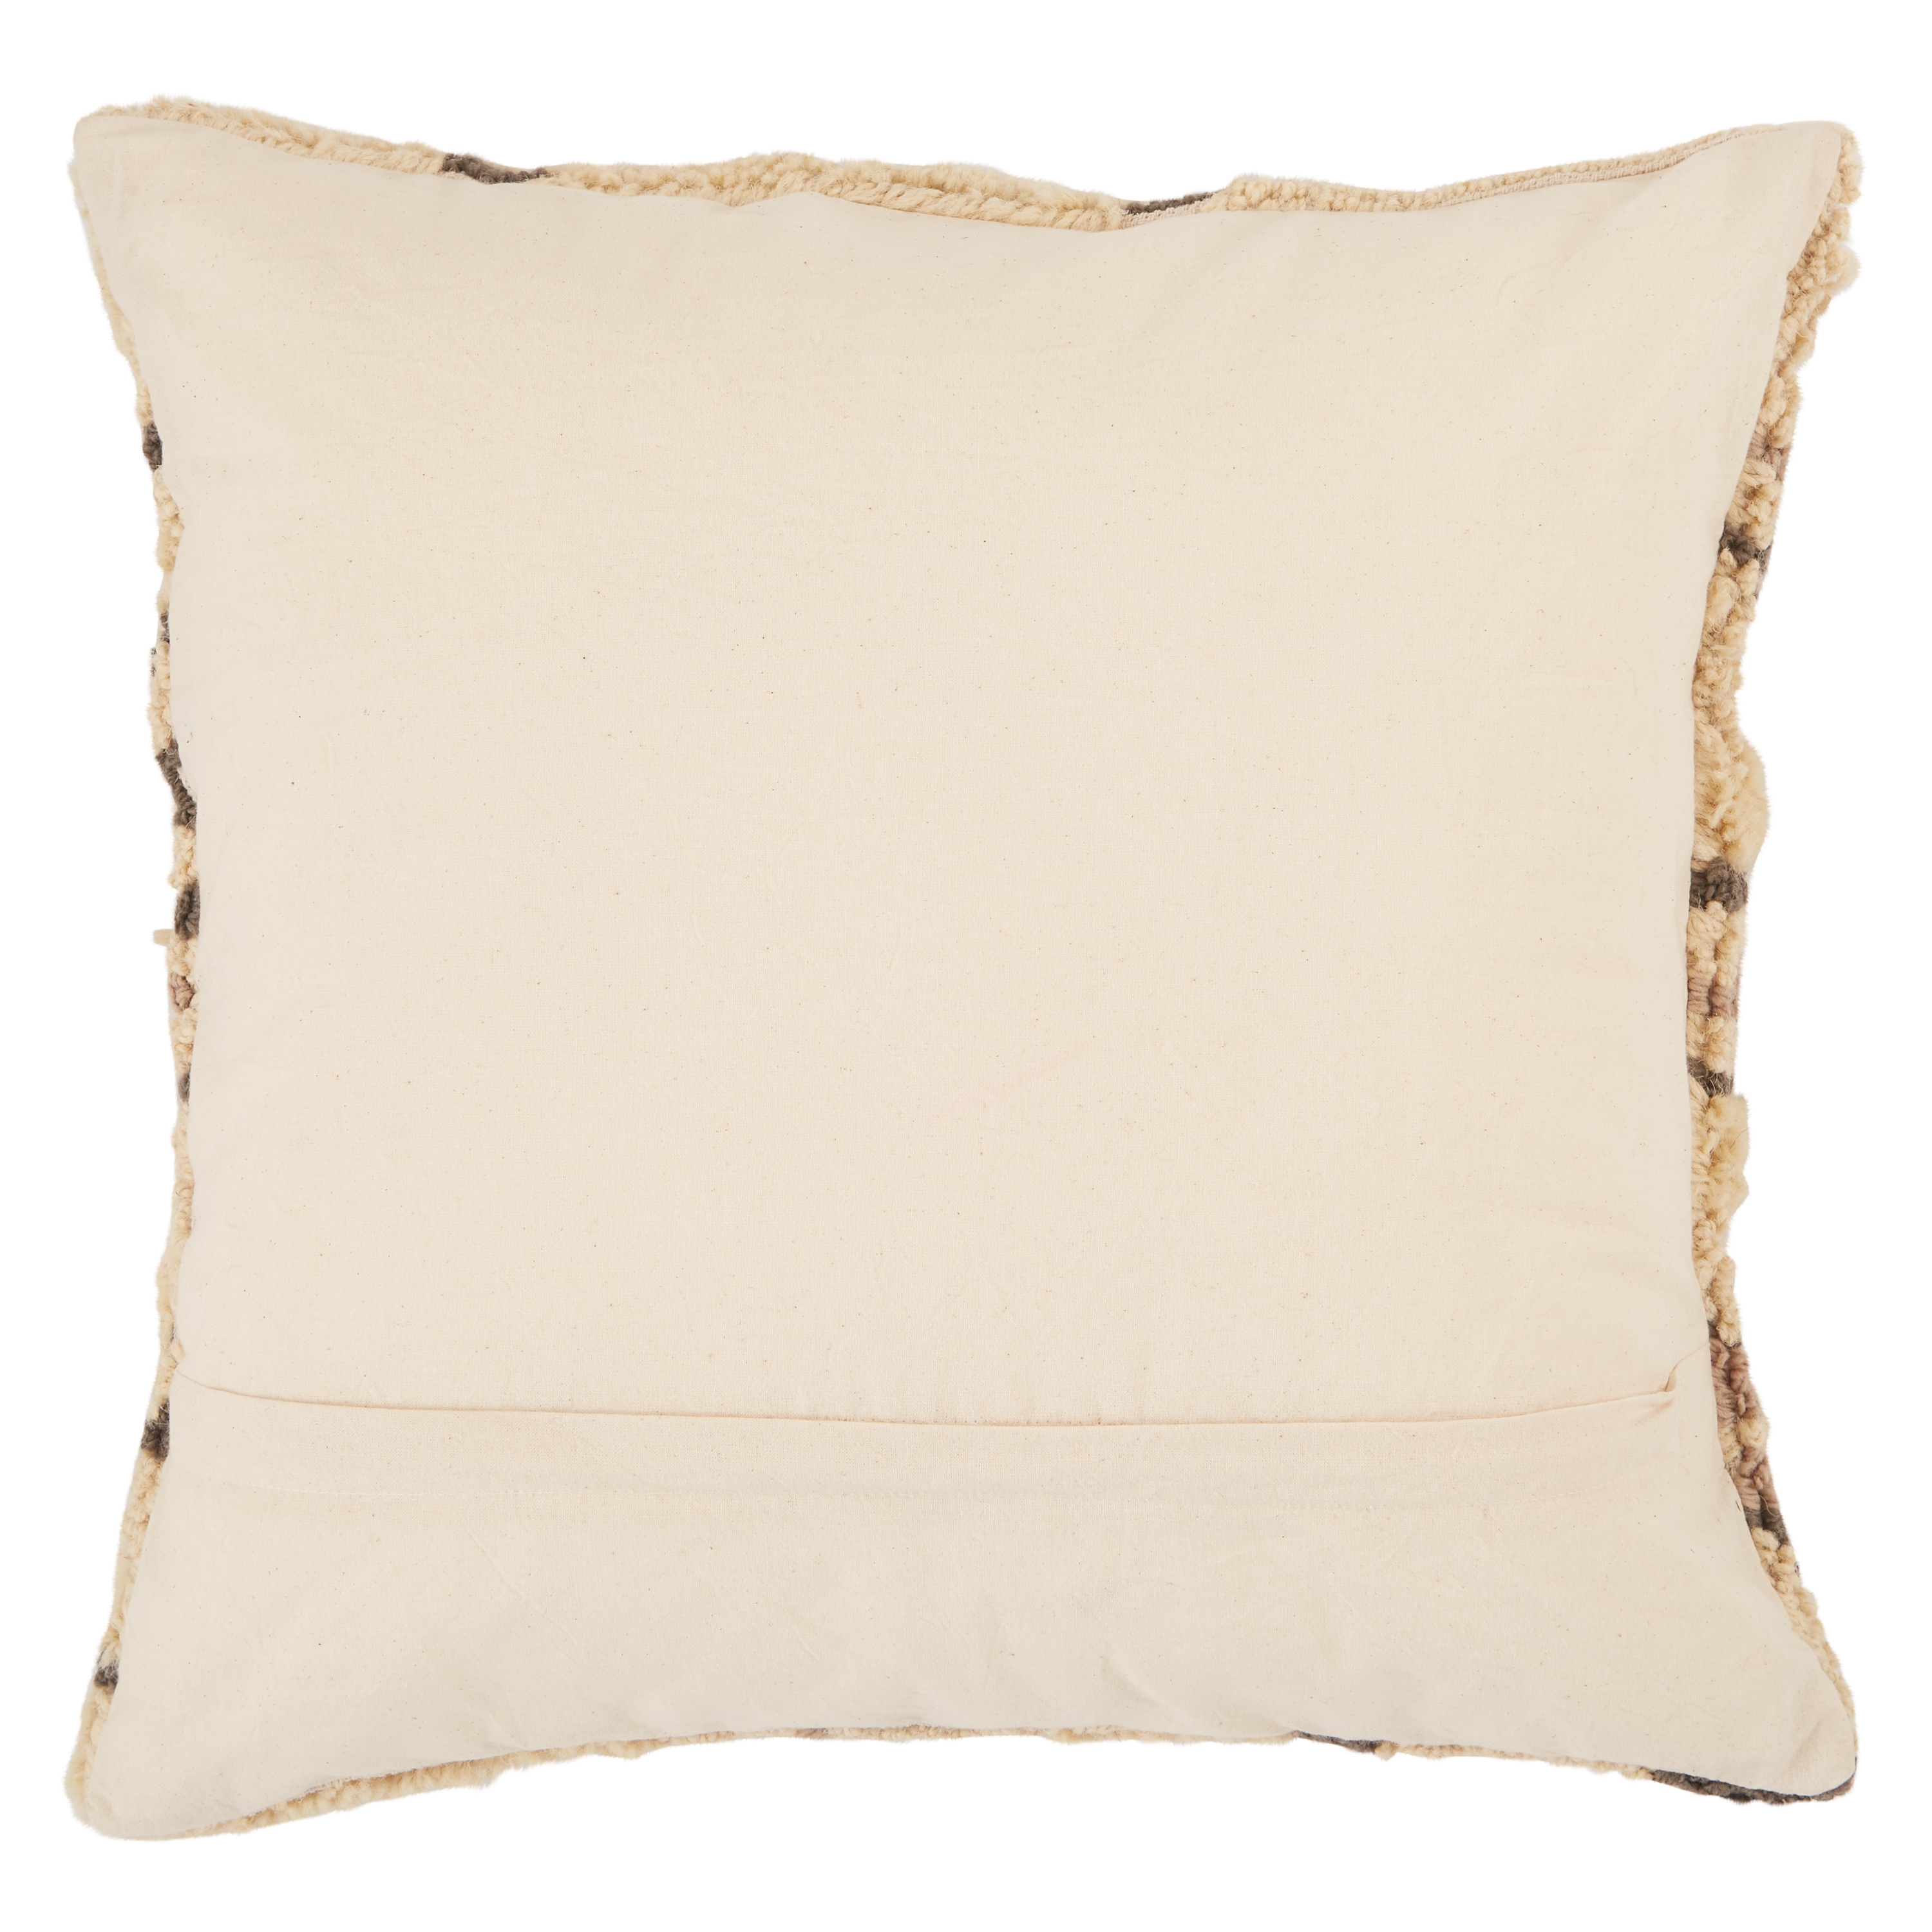 Sidda Throw Pillow, Tan & Brown, 18" x 18" - Image 1